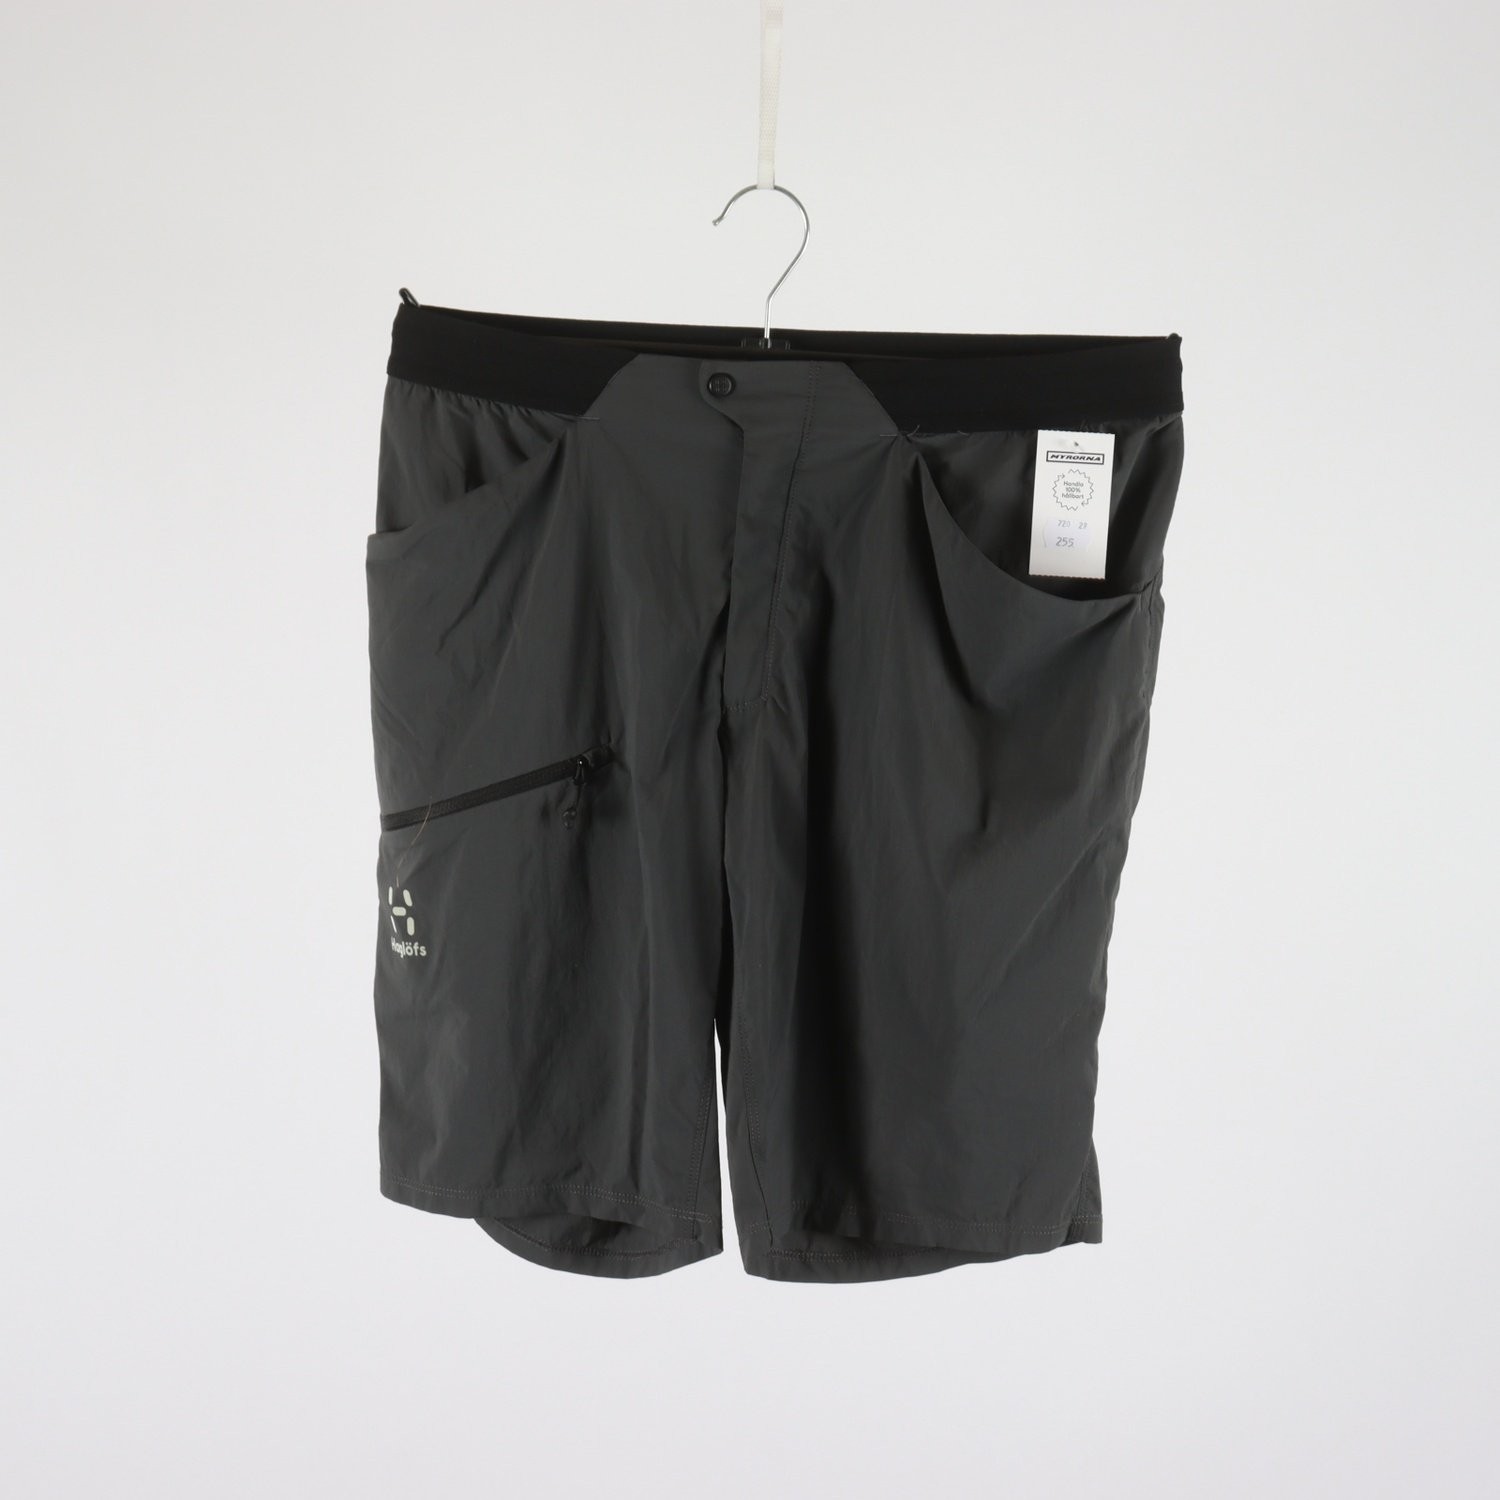 Shorts, Haglöfs, grå, stl. 40